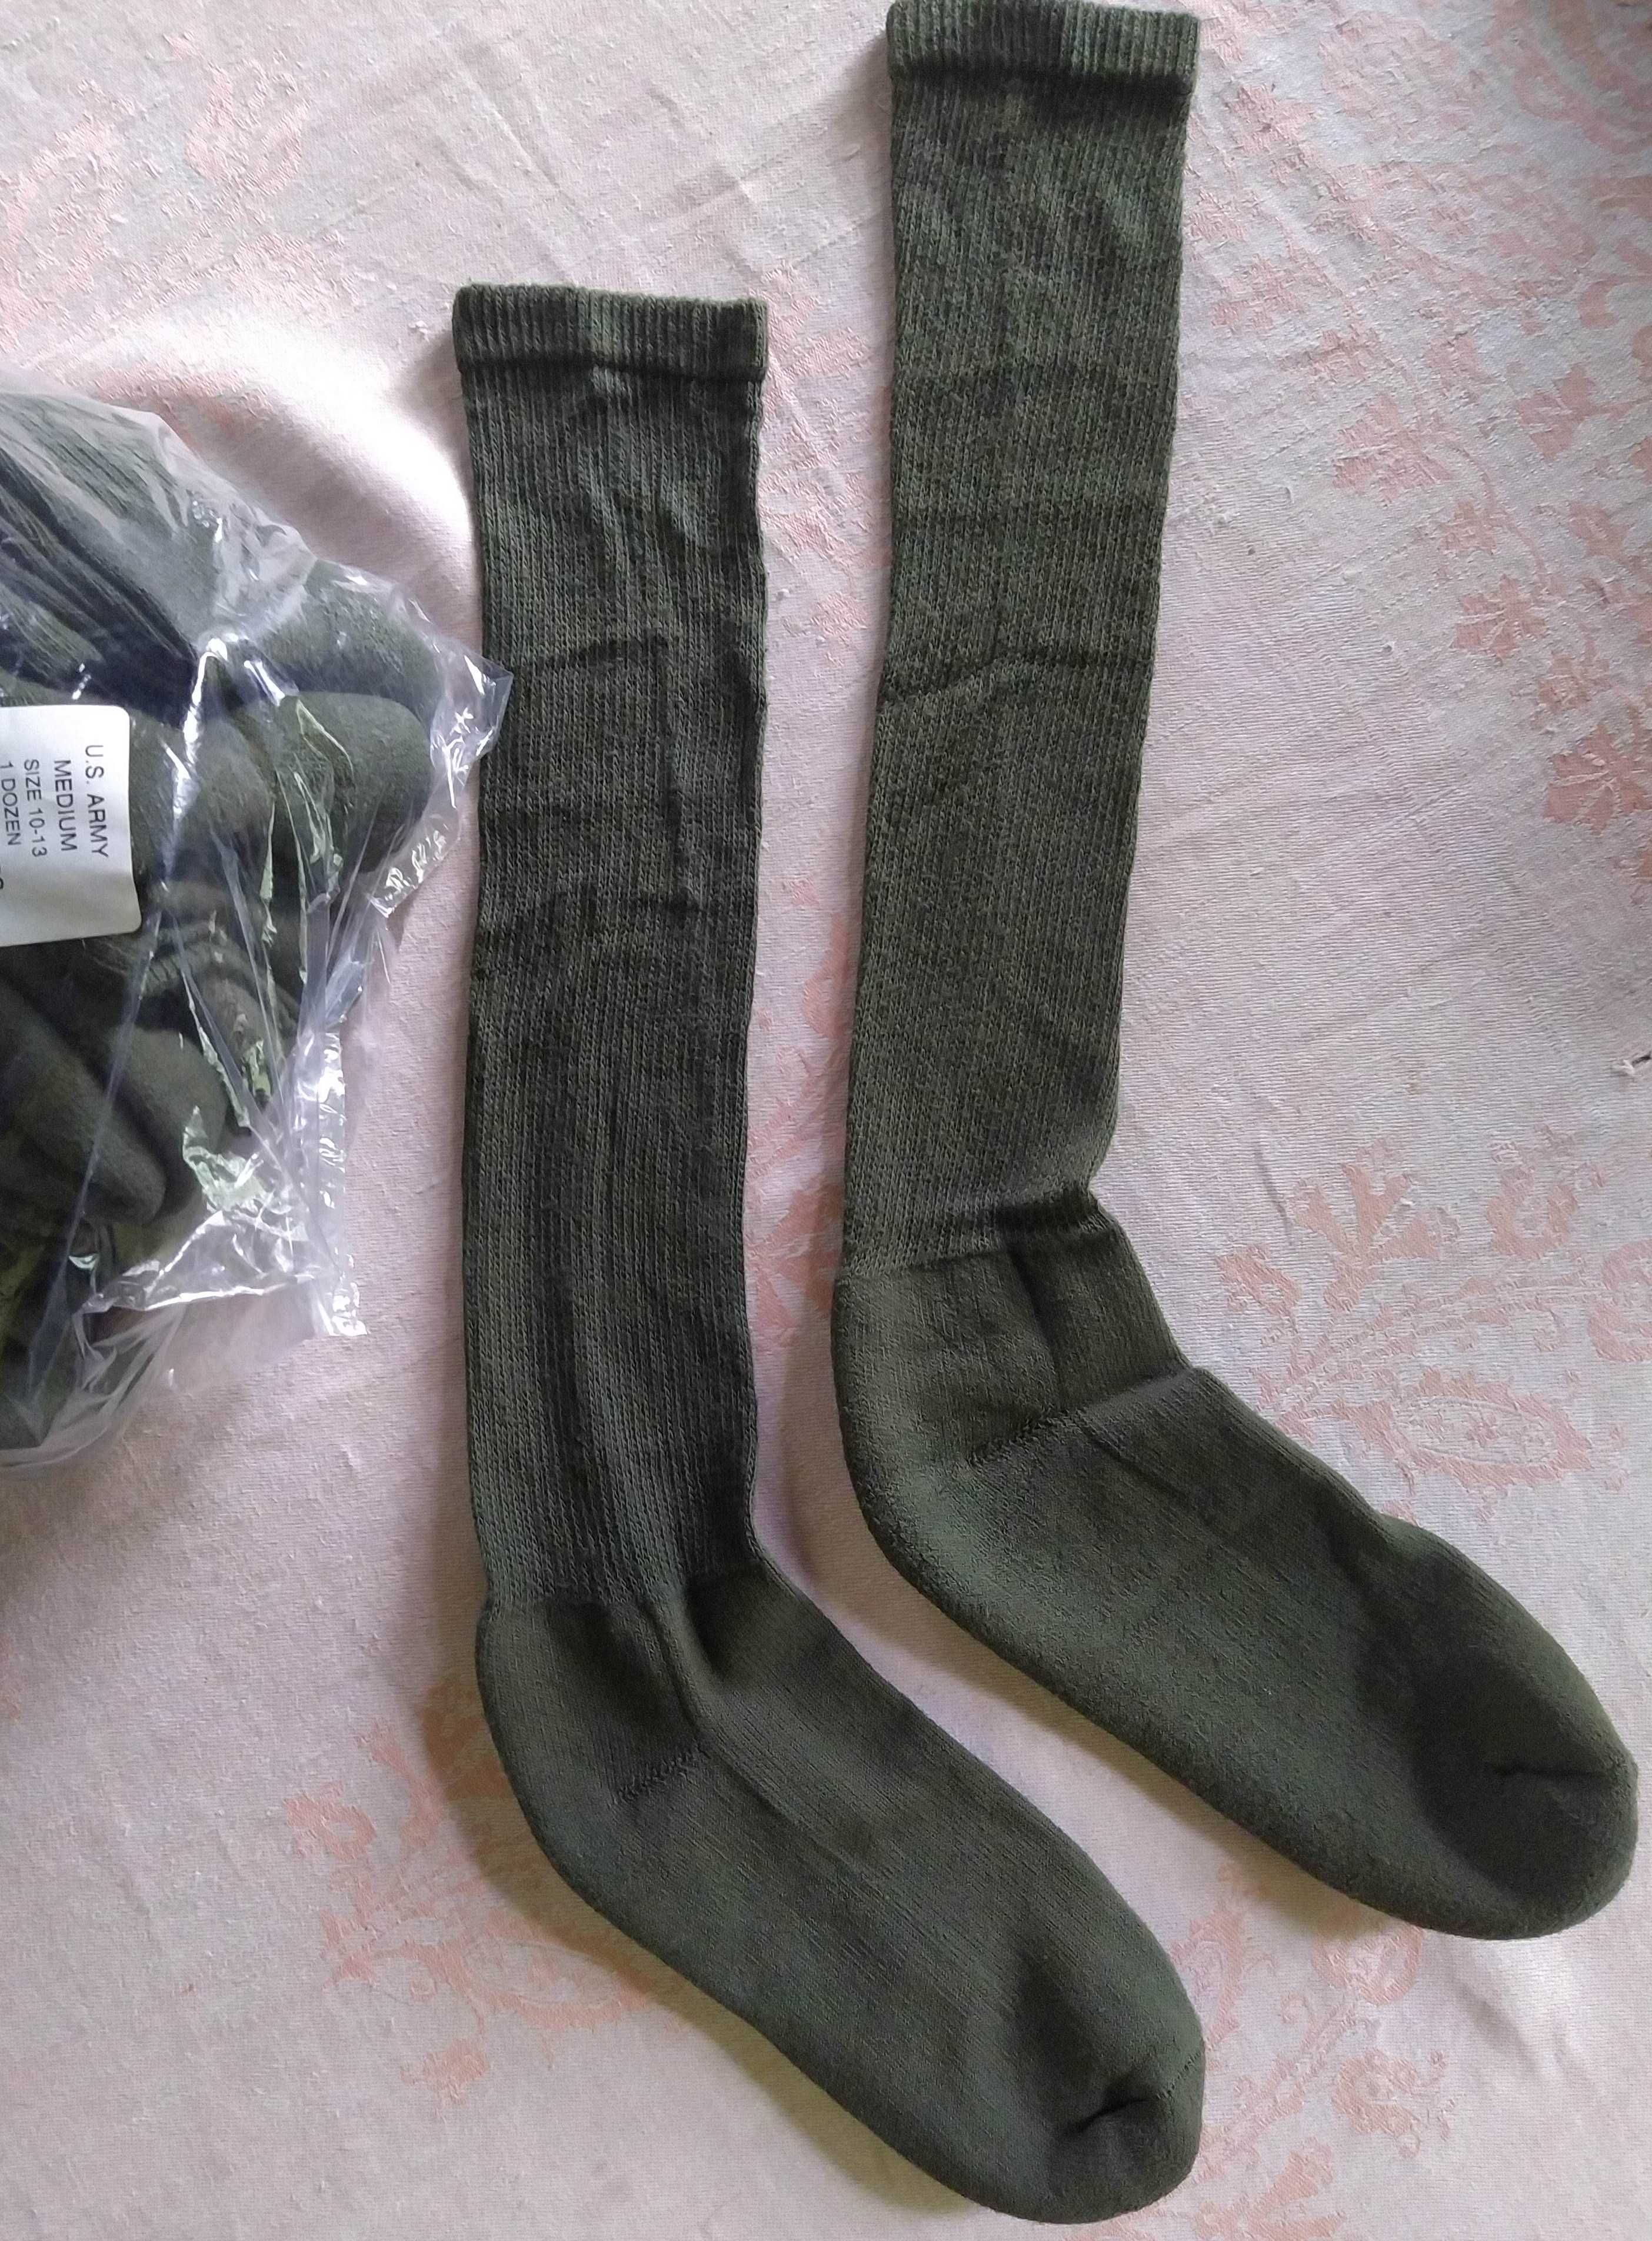 US Army антибактеріальні шкарпетки USOA з 2.5% срібної нитки амікробні